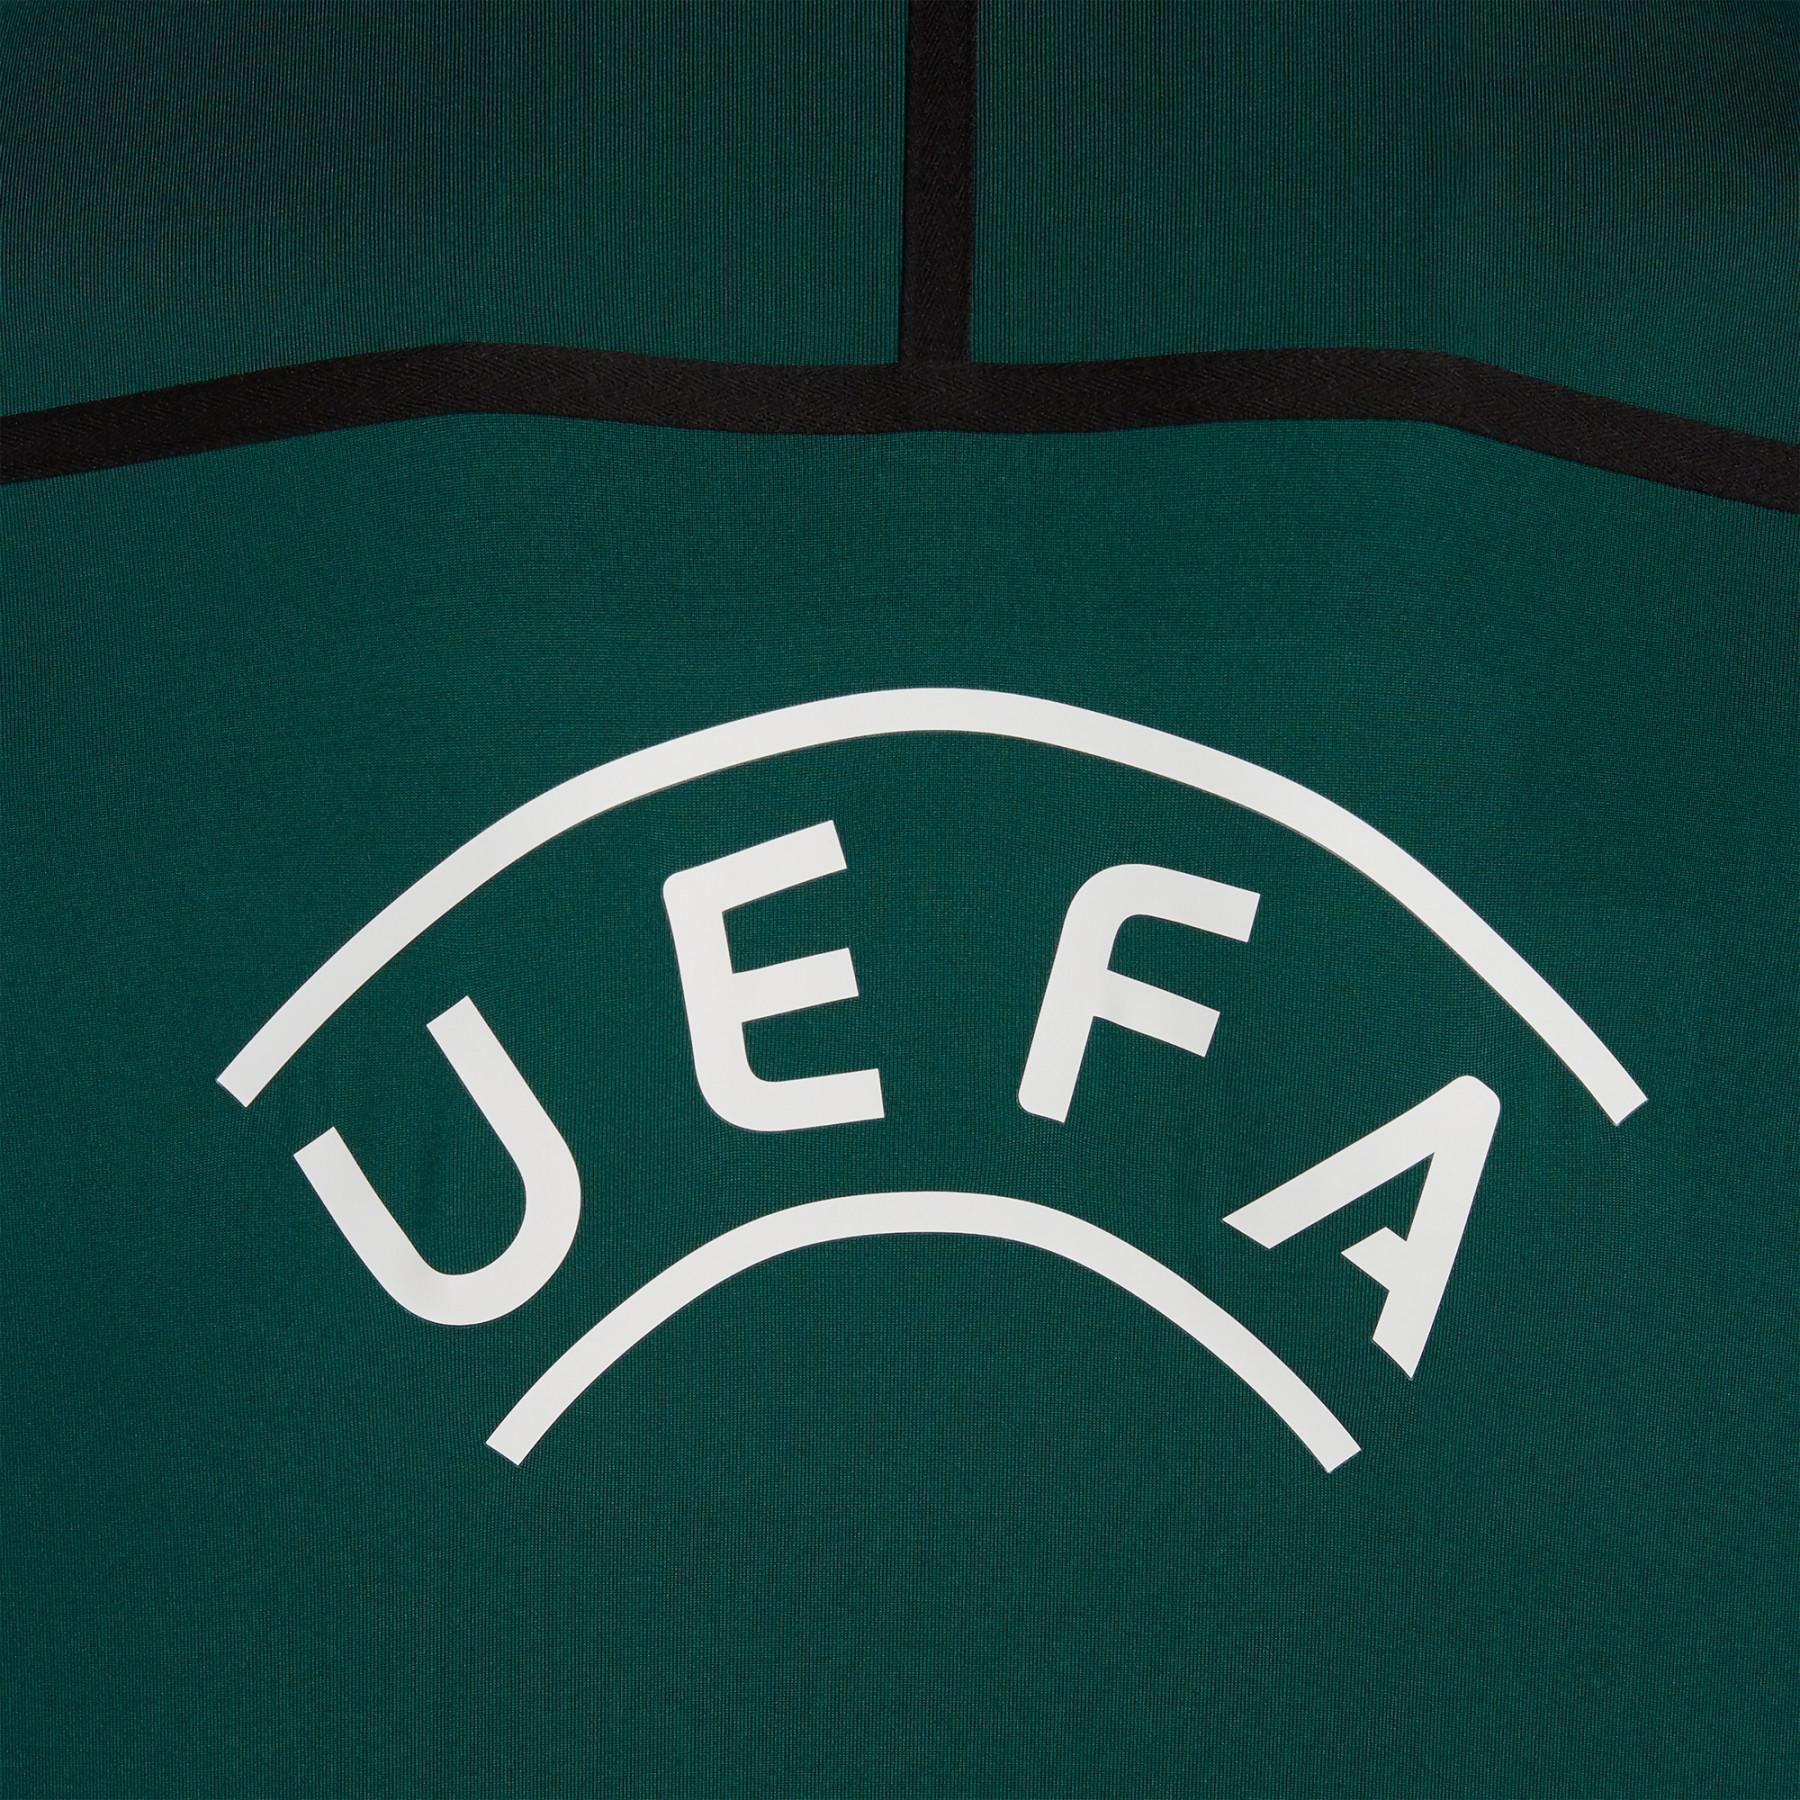 Formación superior Macron UEFA 2019